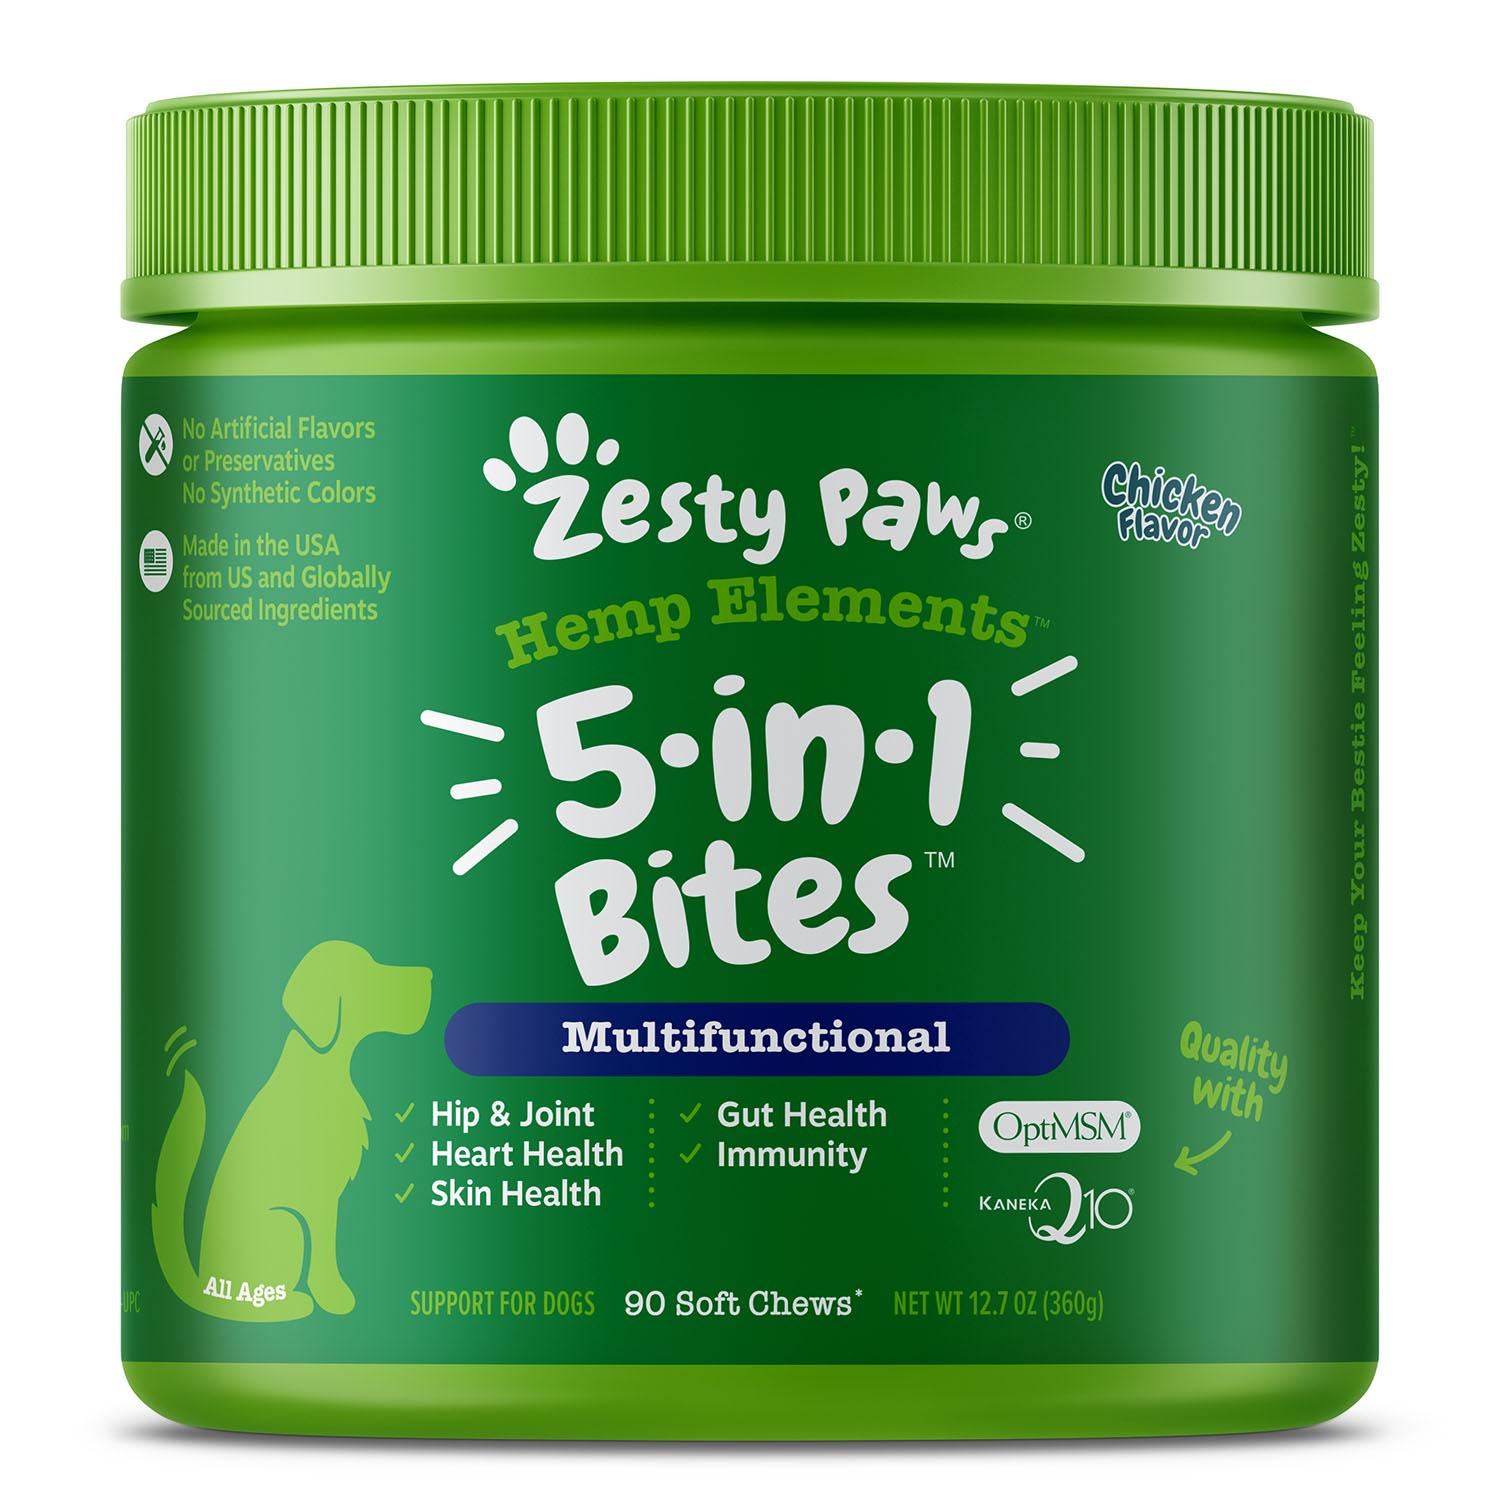 Zesty Paws Hemp Elements 5-in-1 Bites Multifunctional Dog Chews - Chicken